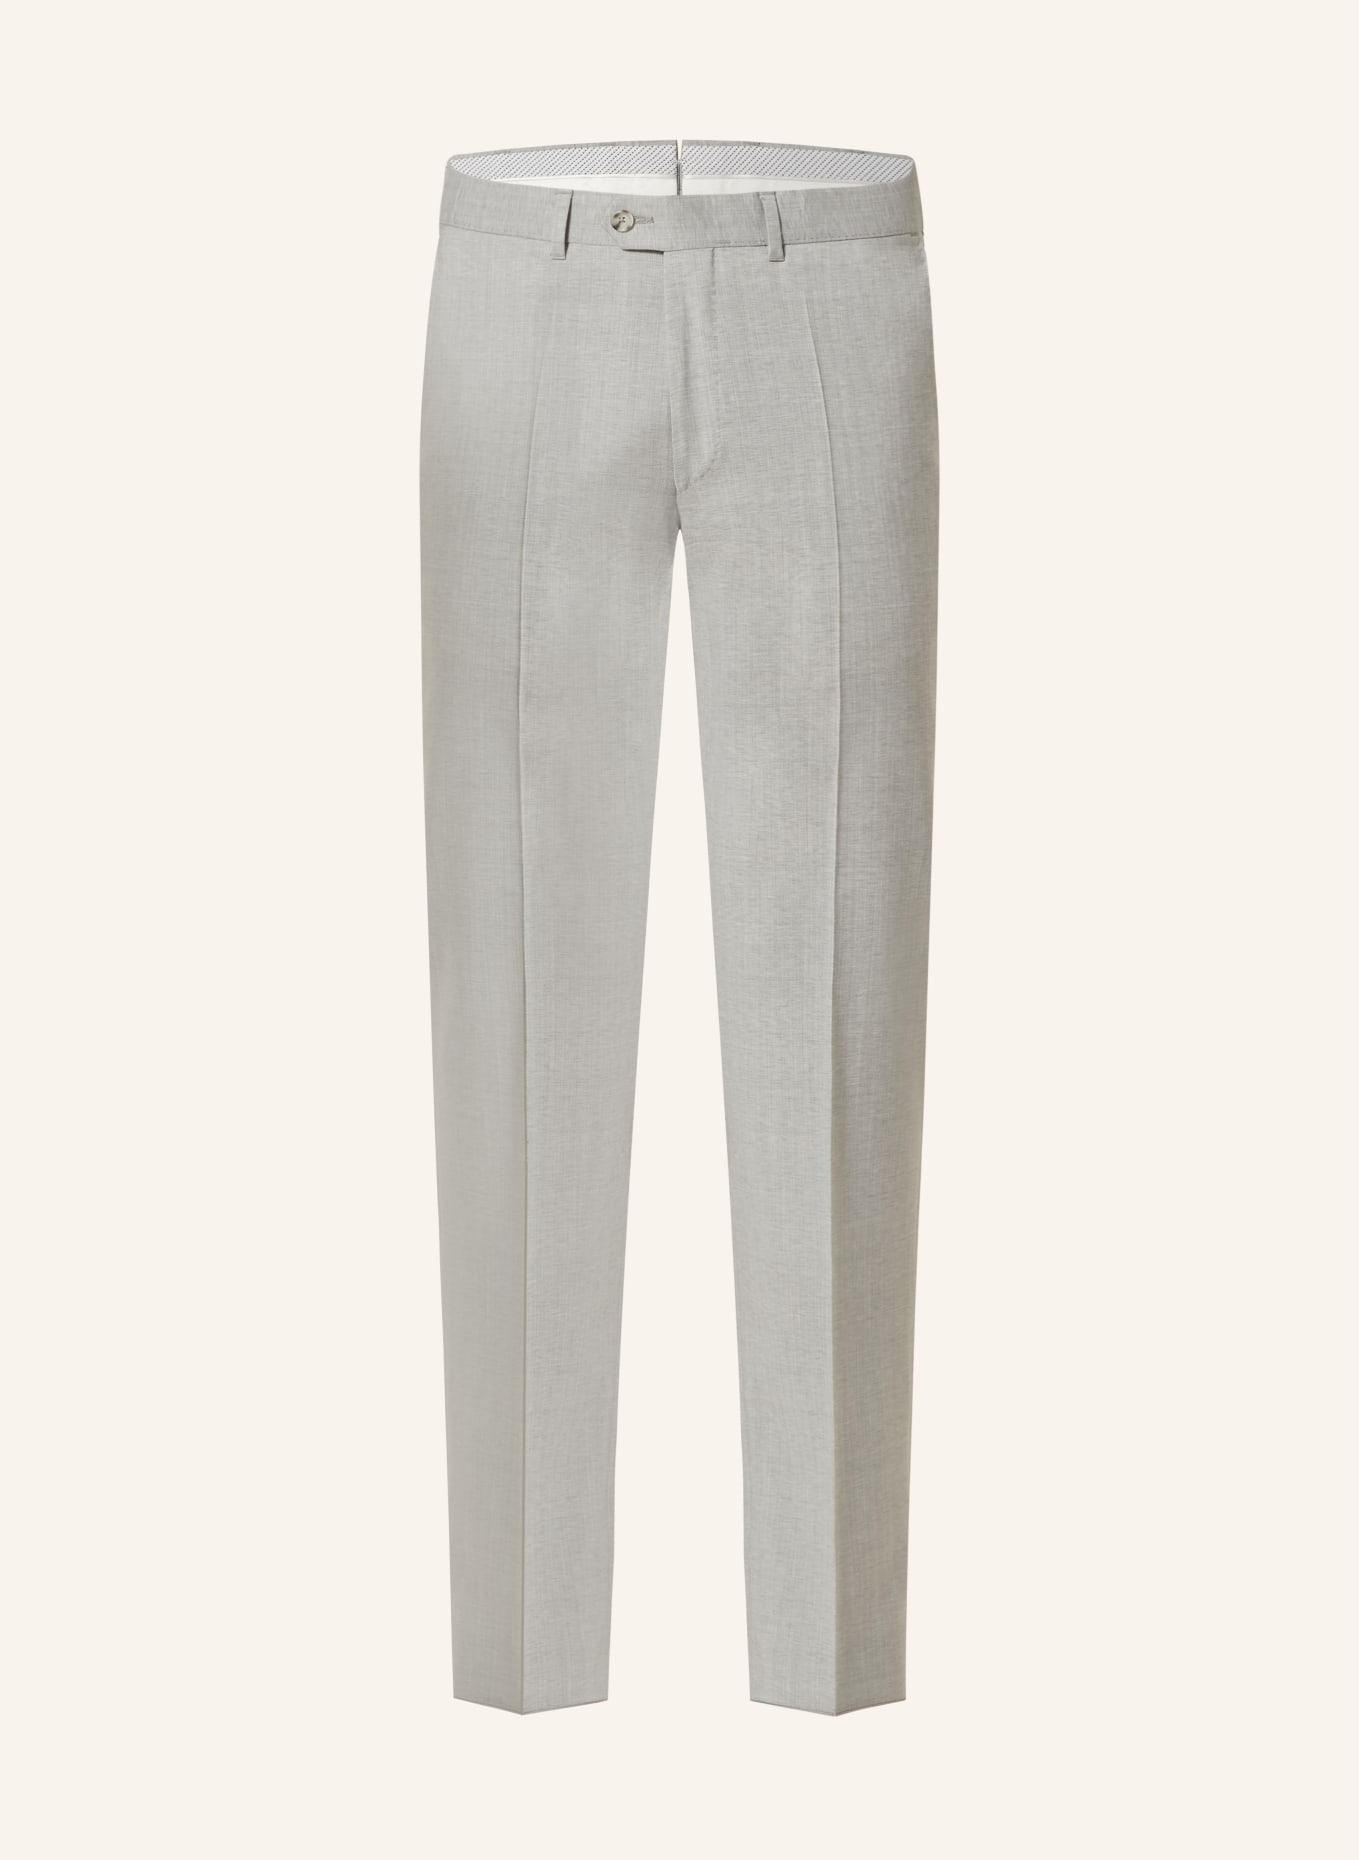 EDUARD DRESSLER Suit trousers shaped fit, Color: 013 HELLGRAU (Image 1)